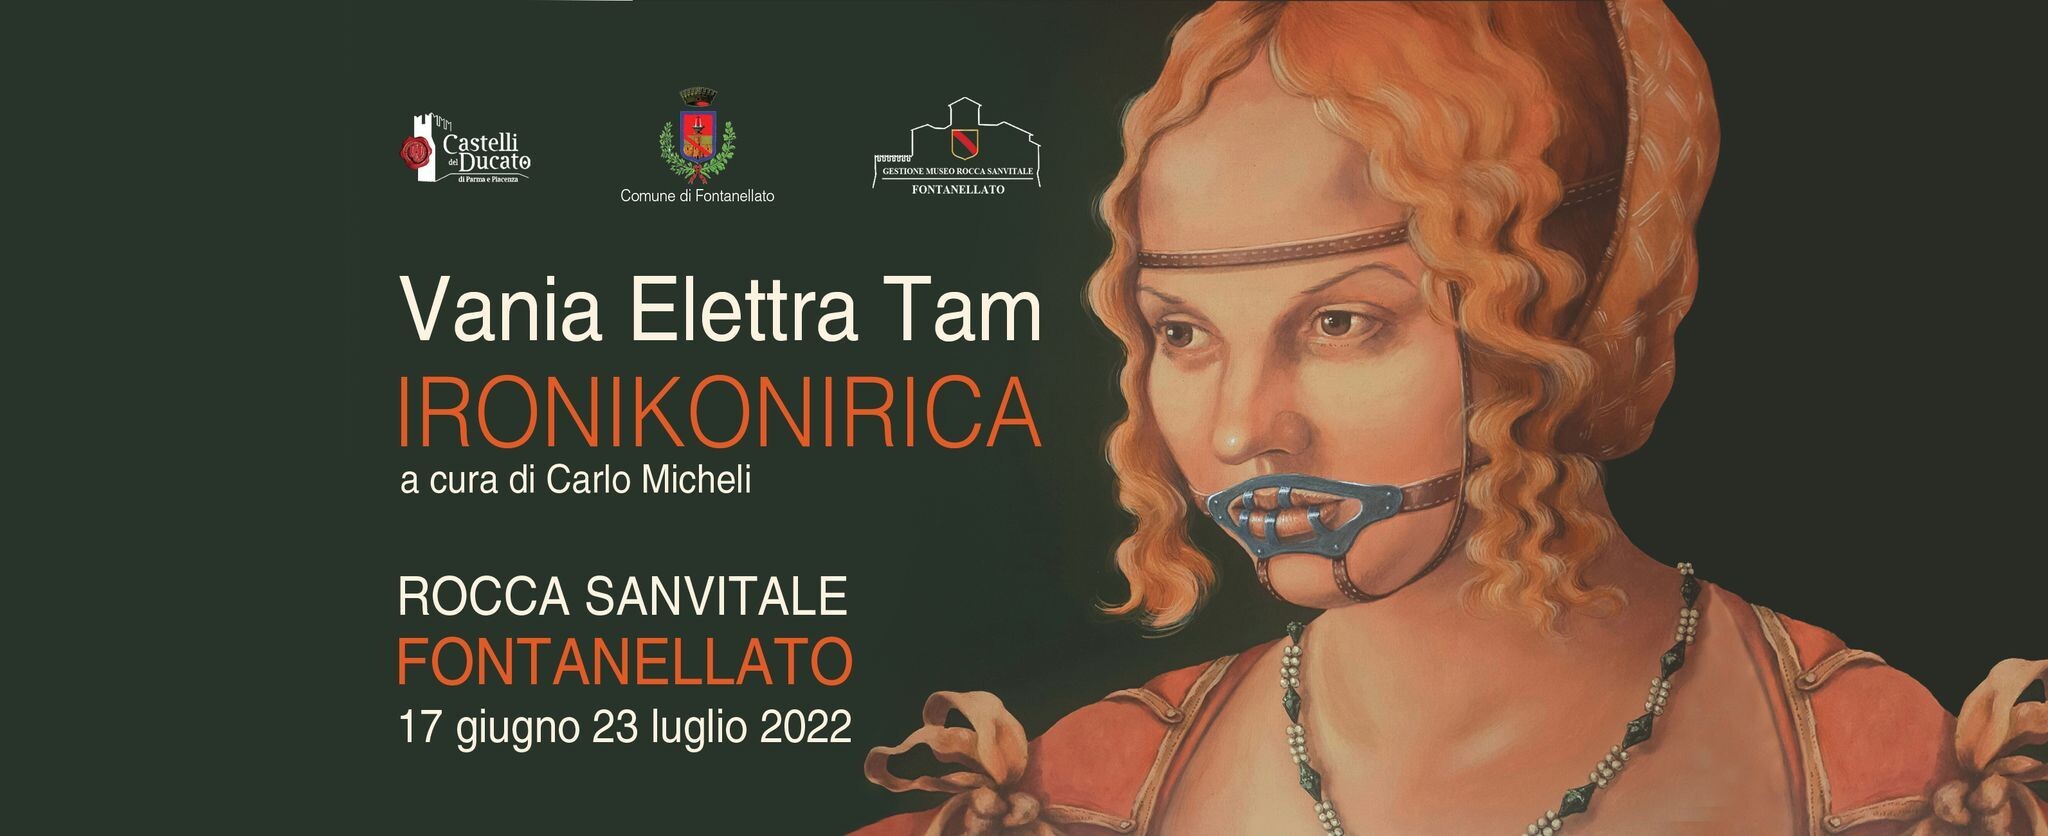 IRONIKONIRICA  La ConTAMinAzione artistica di Vania Elettra Tam in Rocca Sanvitale a Fontanellato